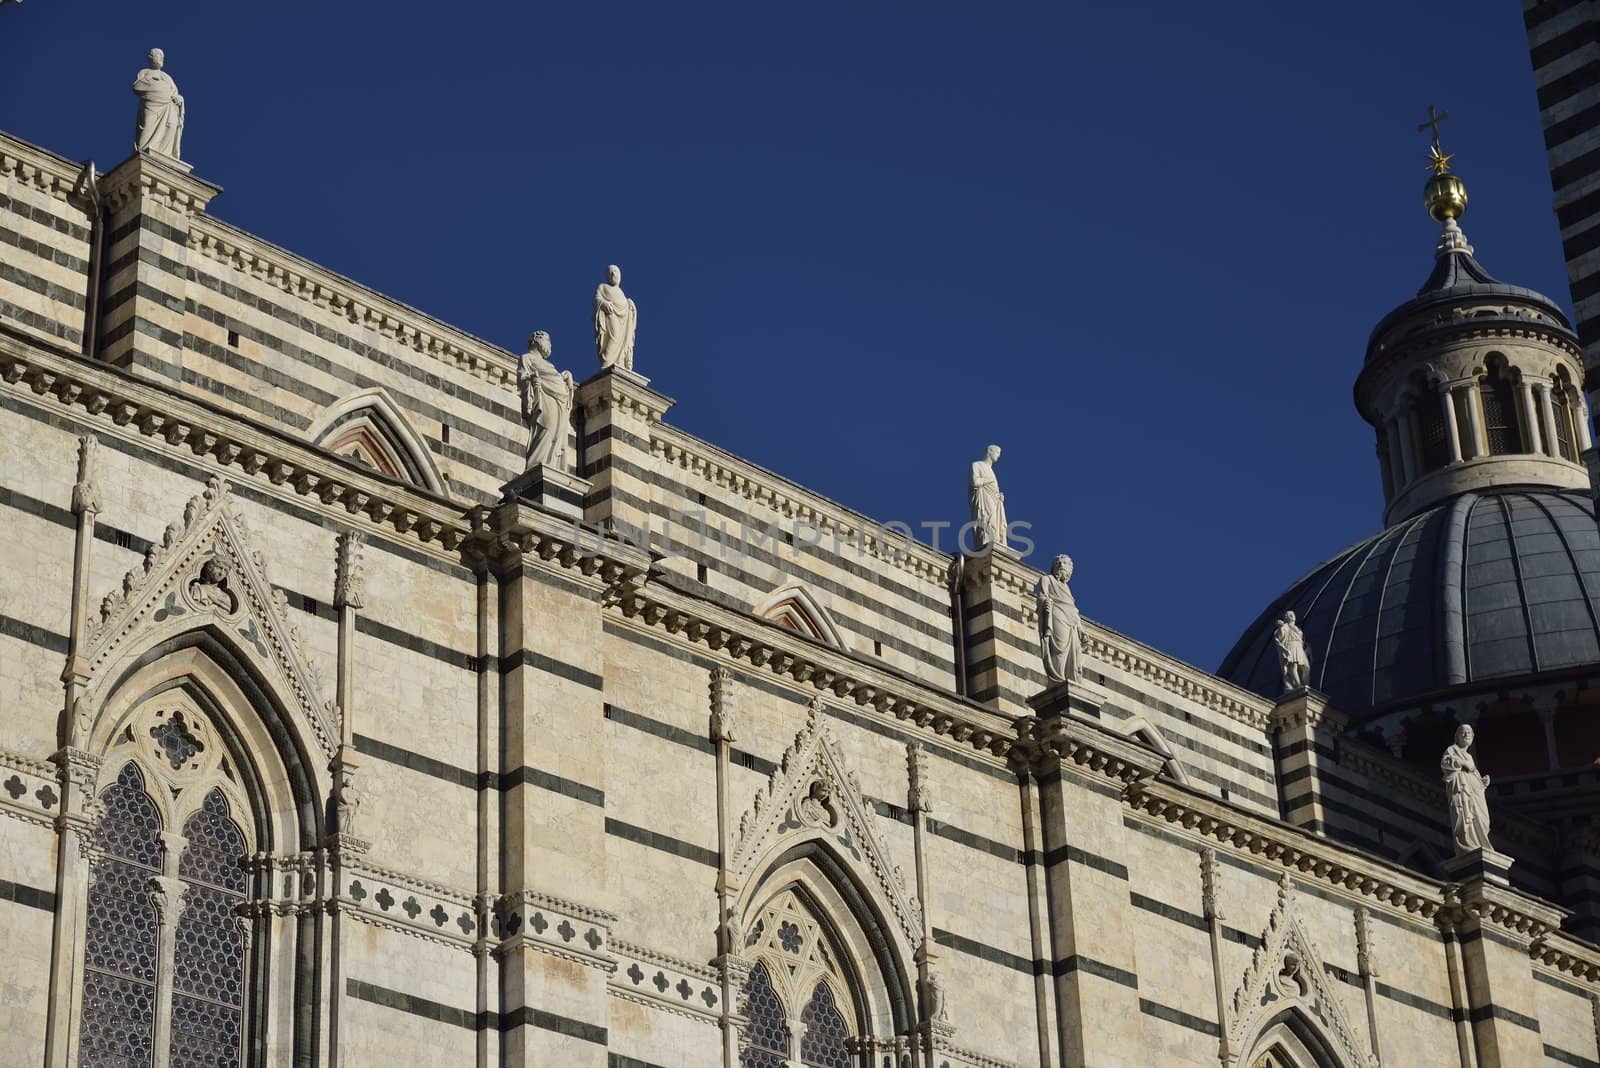 Duomo di Siena by mizio1970